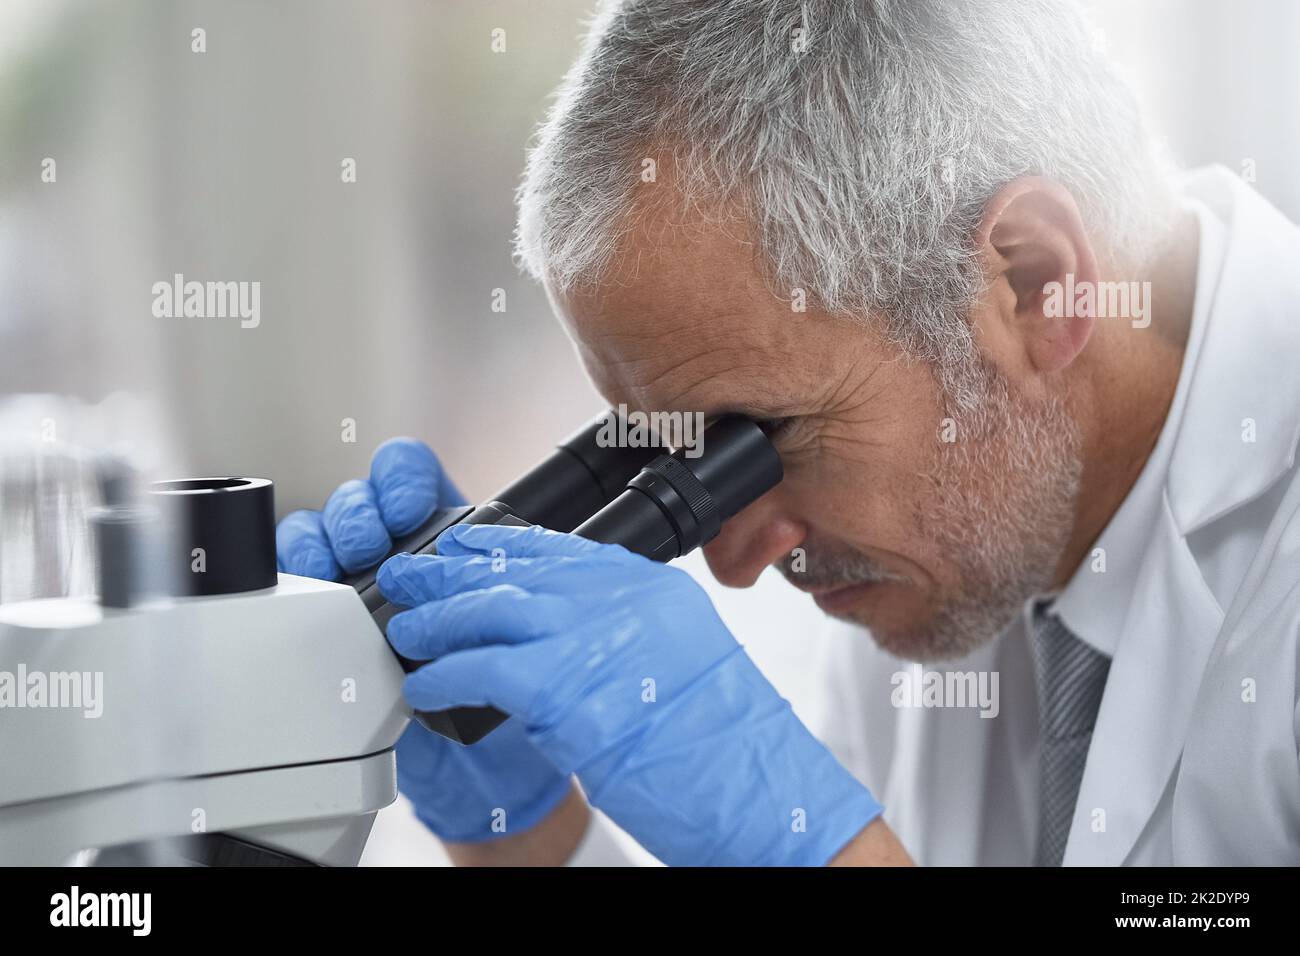 Fortschritte in den kleinen Dingen zu finden. Aufnahme eines wissenschaftlichen Forschers bei der Arbeit an einem Mikroskop in einem Labor. Stockfoto